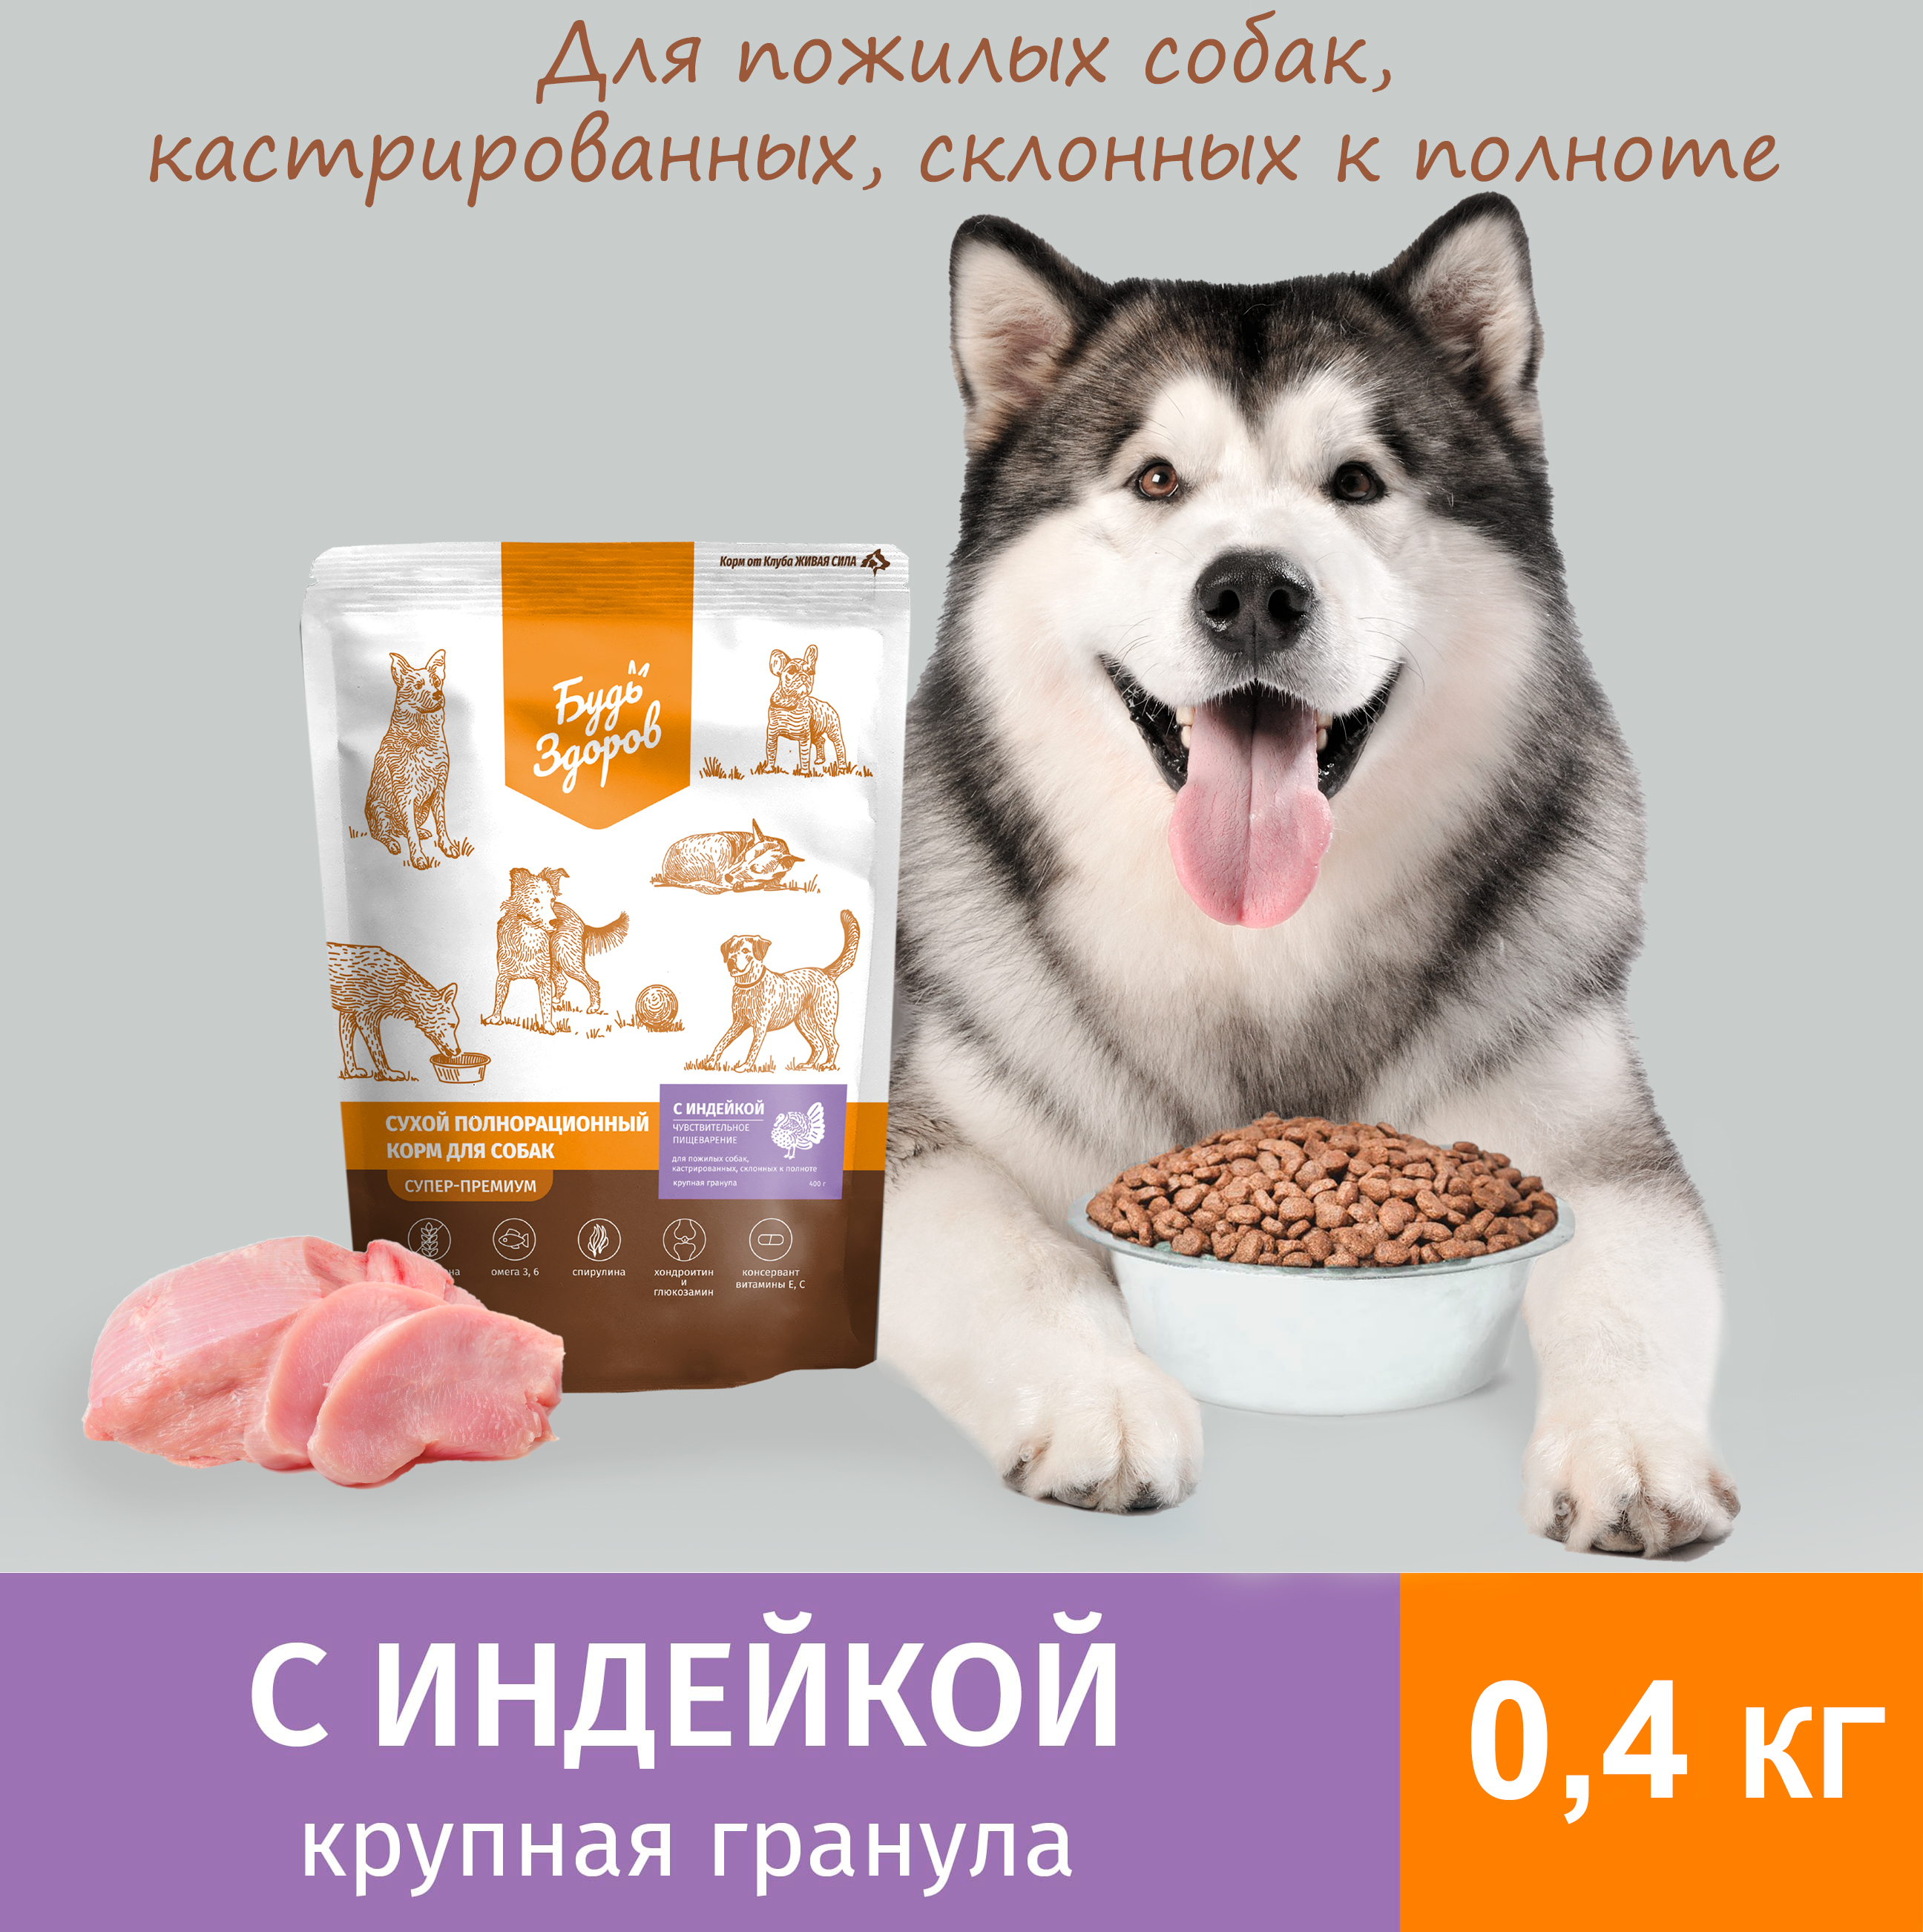 Сухой корм для собак Будь Здоров Живая Сила, крупная гранула, с индейкой, 0,4 кг